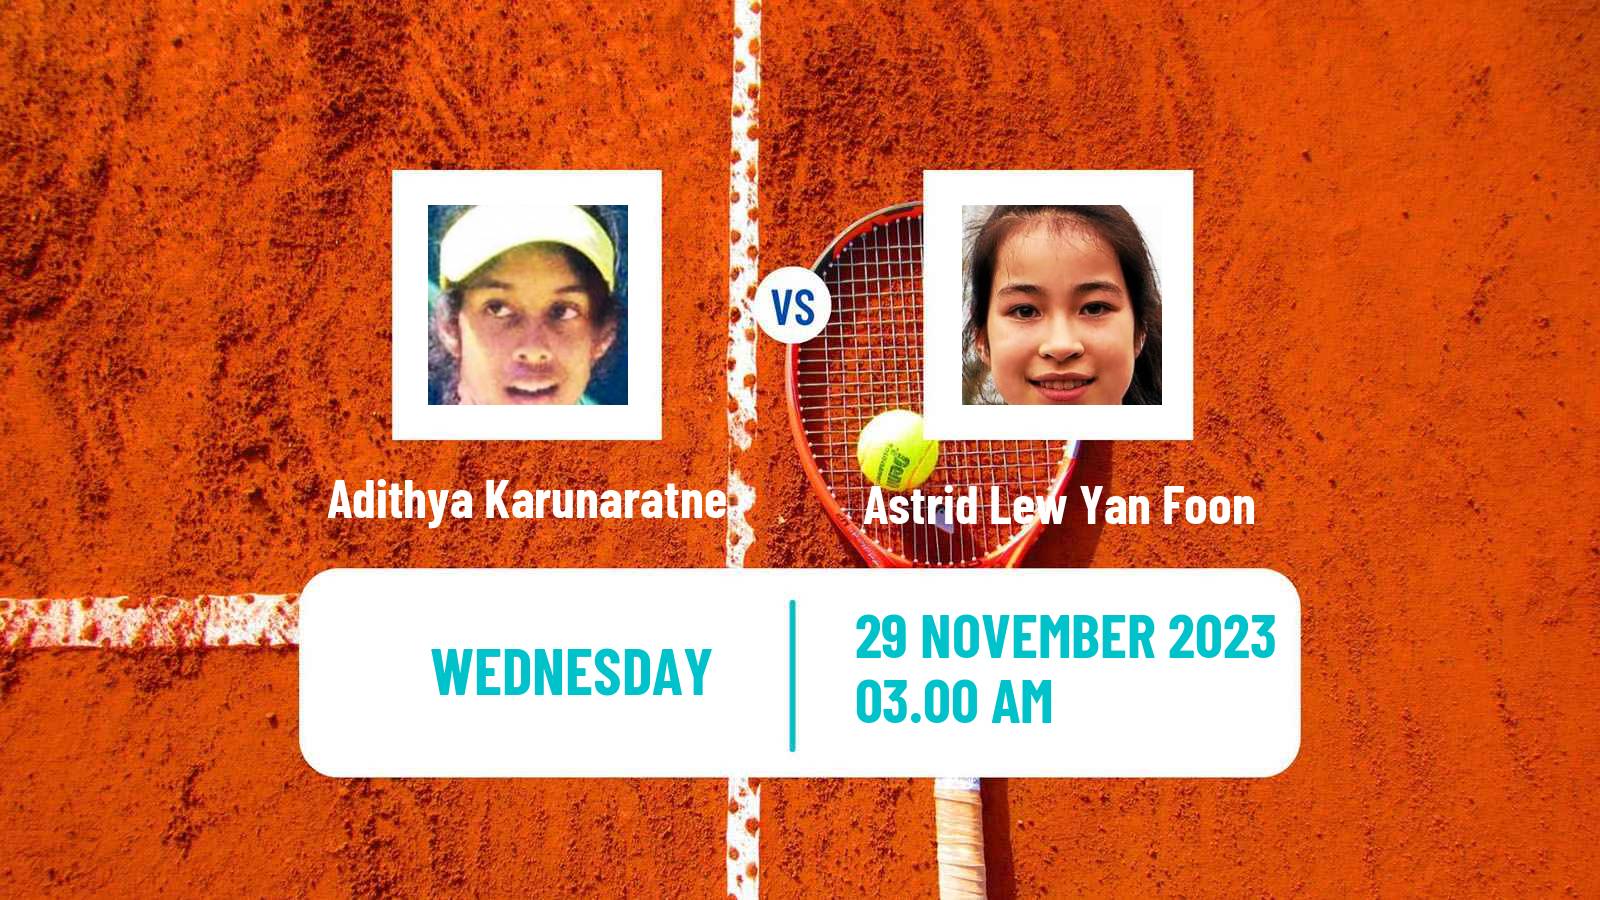 Tennis ITF W25 Limassol 2 Women Adithya Karunaratne - Astrid Lew Yan Foon